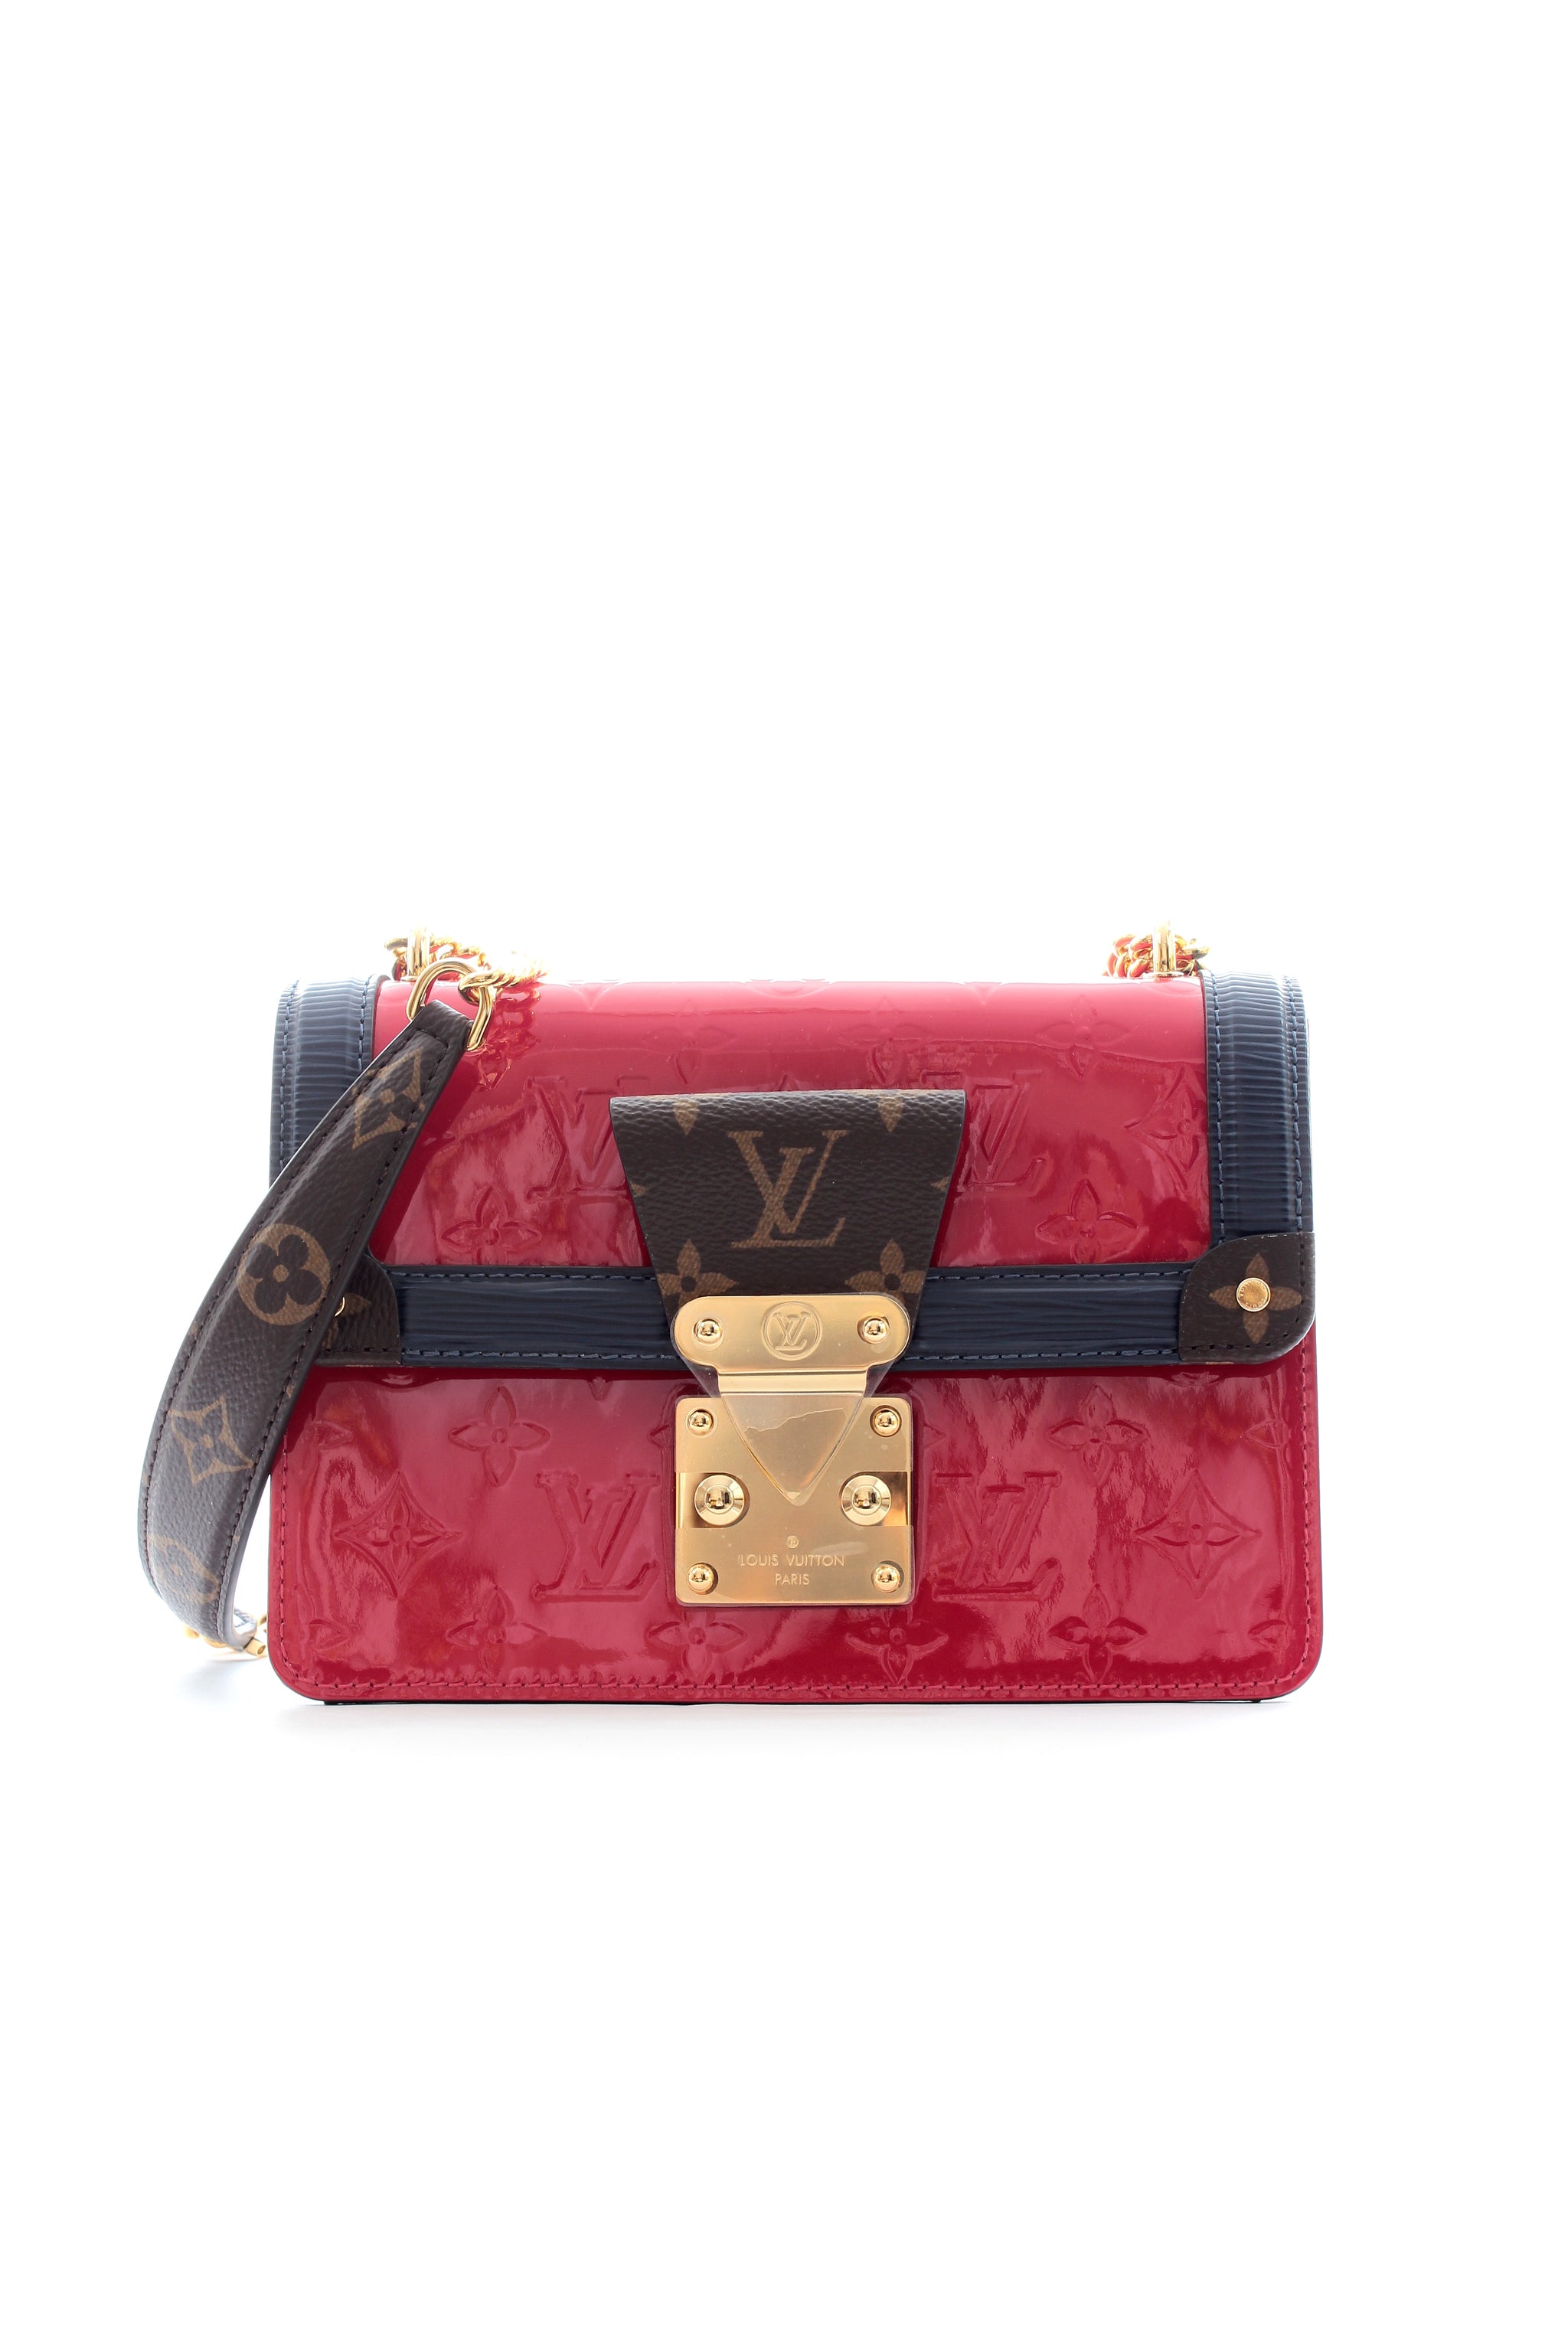 Louis Vuitton M90445 LV Wynwood Chain bag in Embossed Monogram